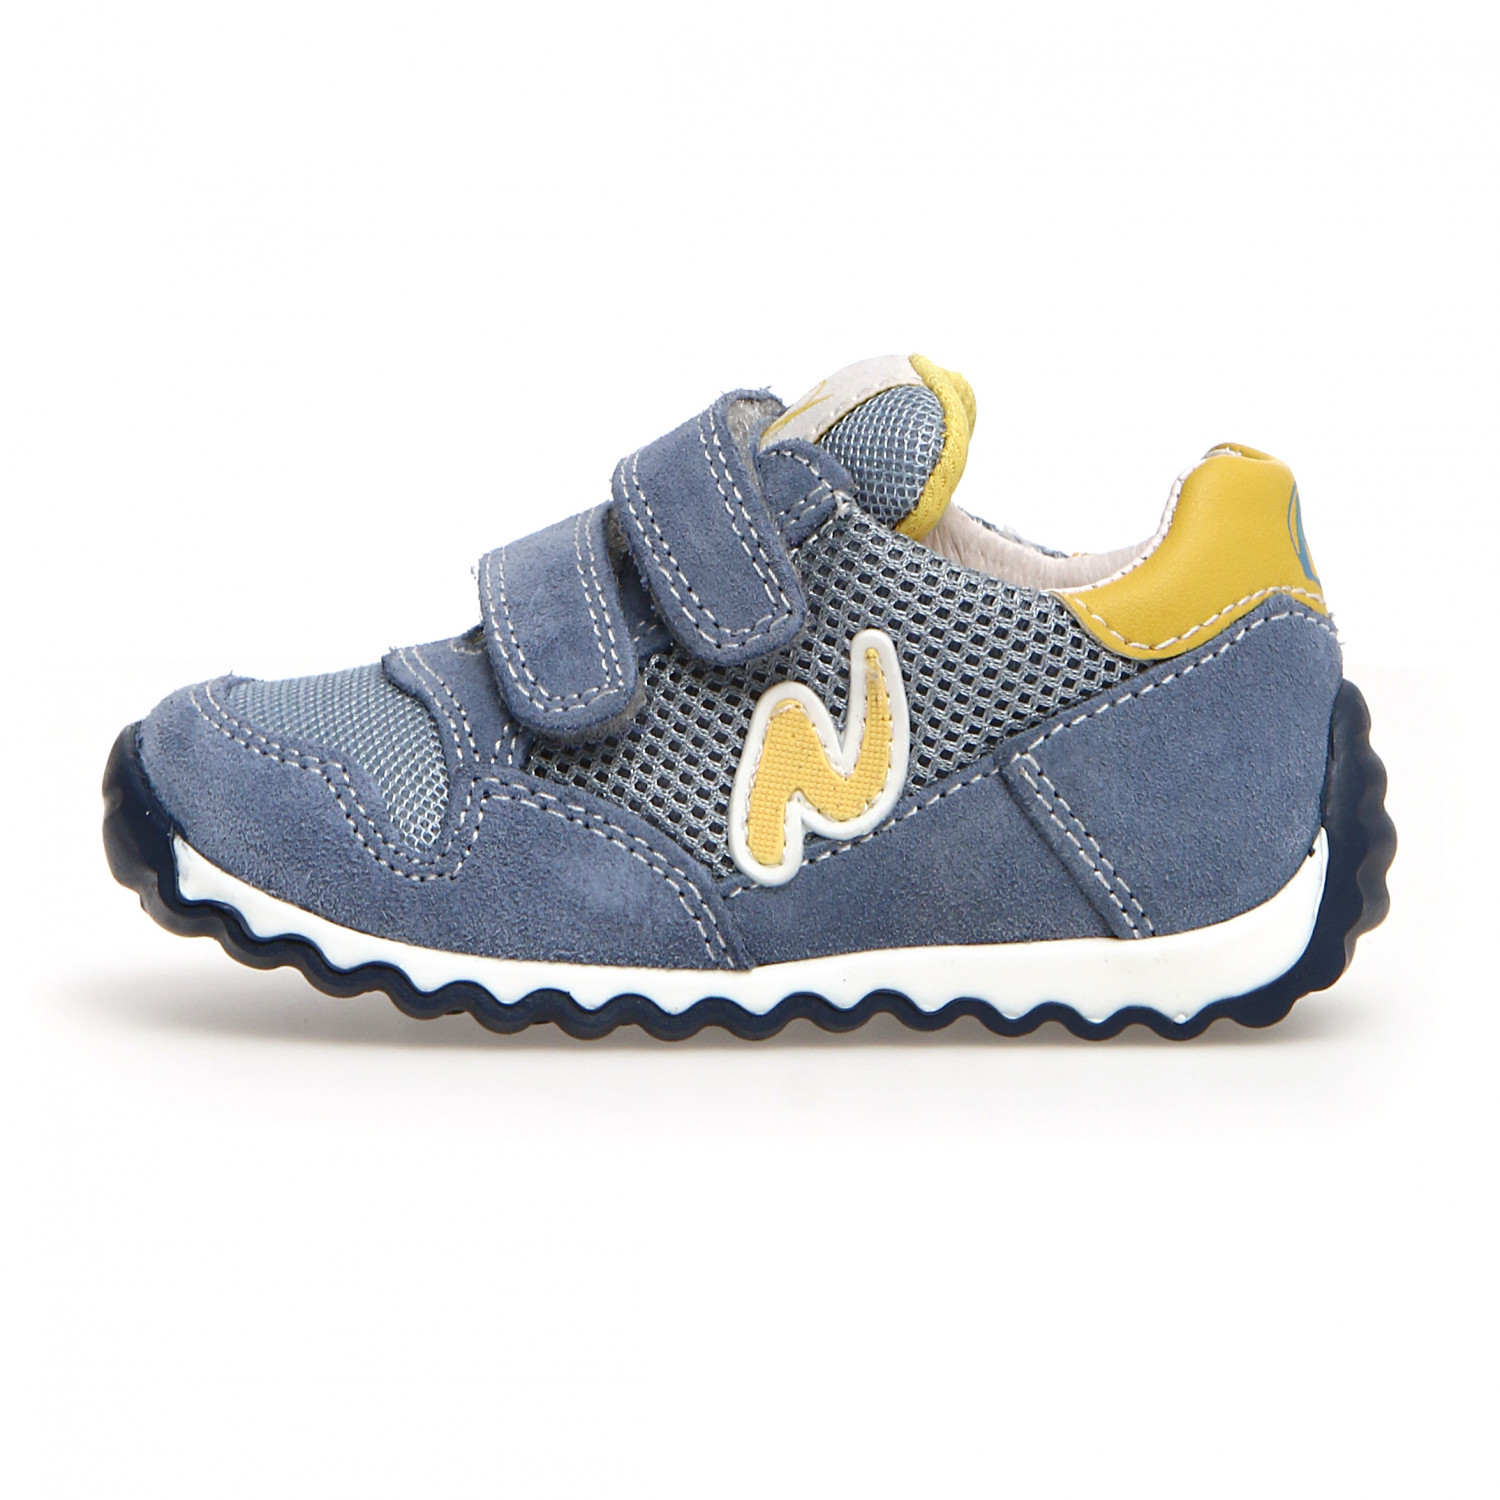 Повседневная обувь Naturino Kid's Sammy 2 VL Suede, цвет Hellblau